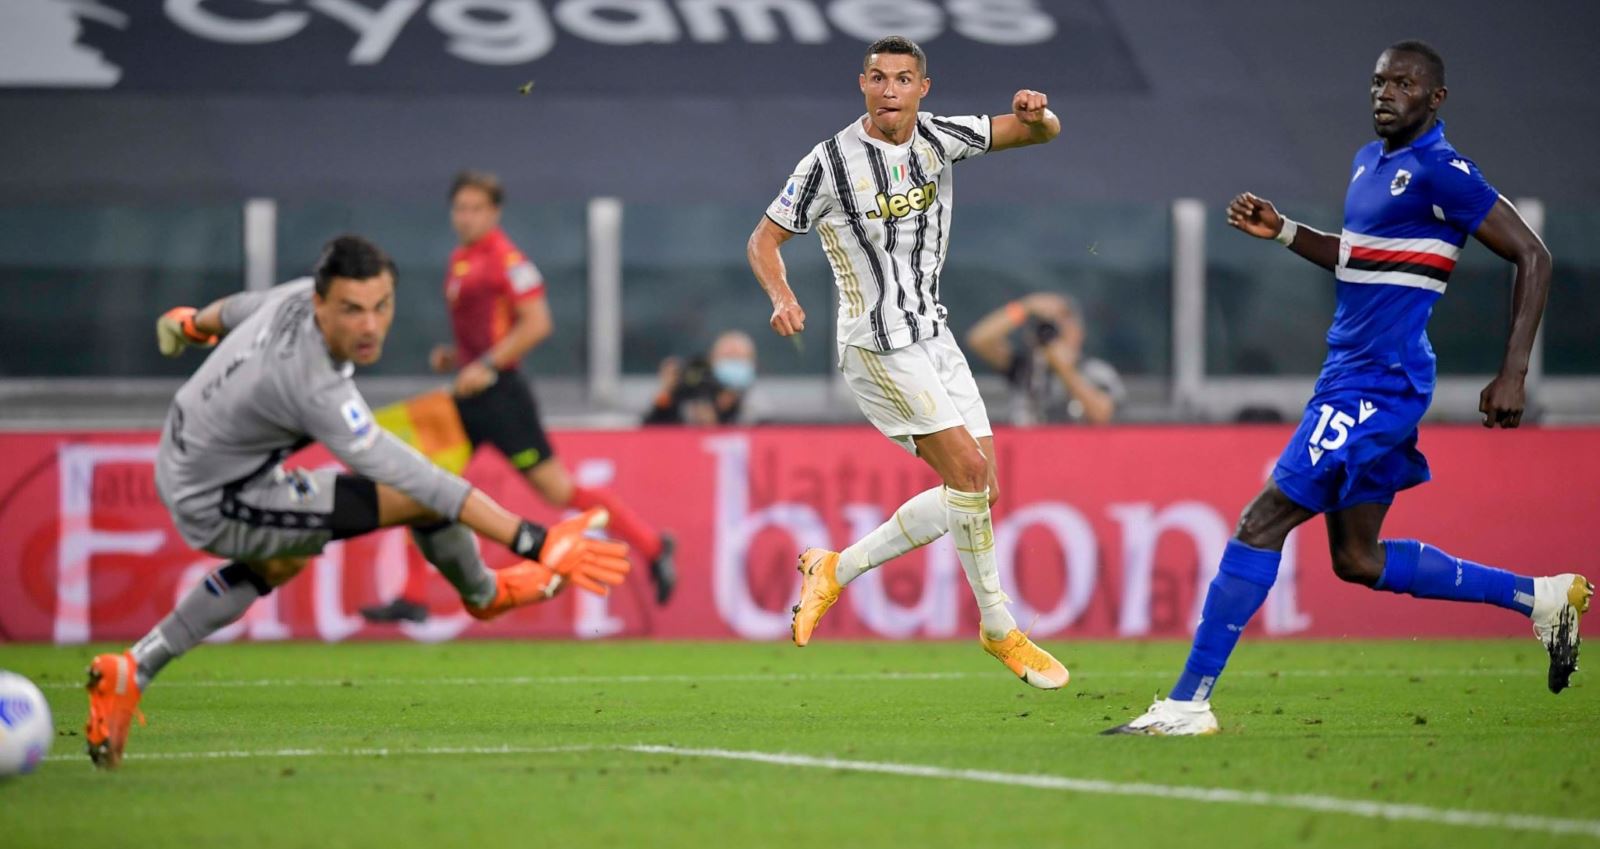 Ket qua bong da Y, Video clip Juventus vs Sampdoria, Bảng xếp hạng Serie A, kết quả juventus đấu với Sampdoria, Kết quả bóng đá Ý vòng 1, kết quả Serie A vòng 1